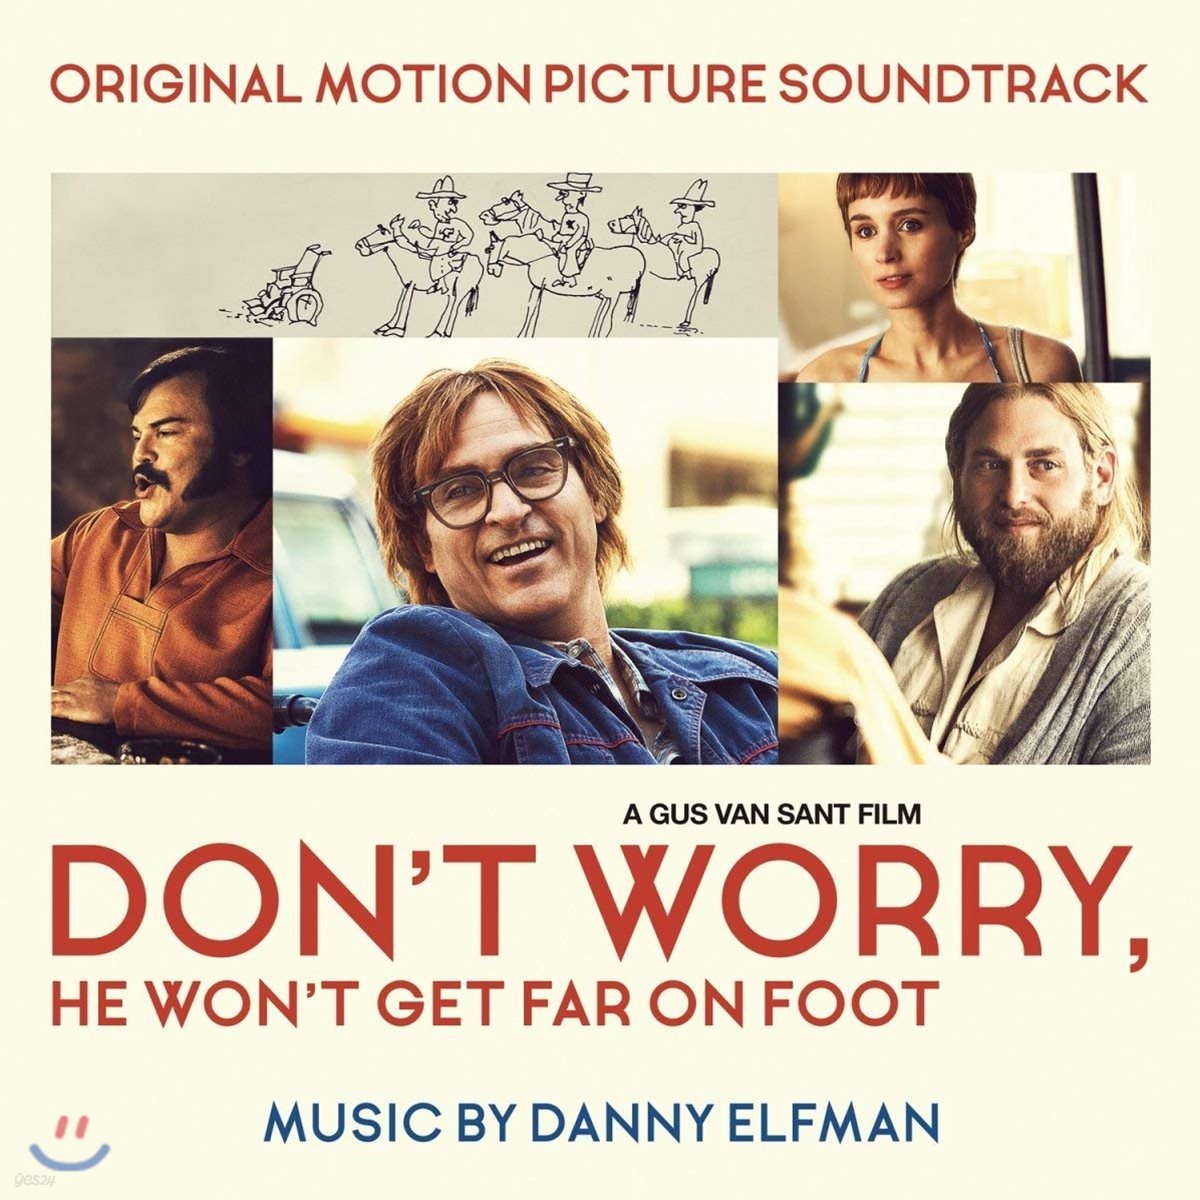 걱정마요, 걸어서는 멀리 못 갈 거예요 영화음악 (Don&#39;t Worry, He Won&#39;t Get Far on Foot OST by Danny Elfman) 